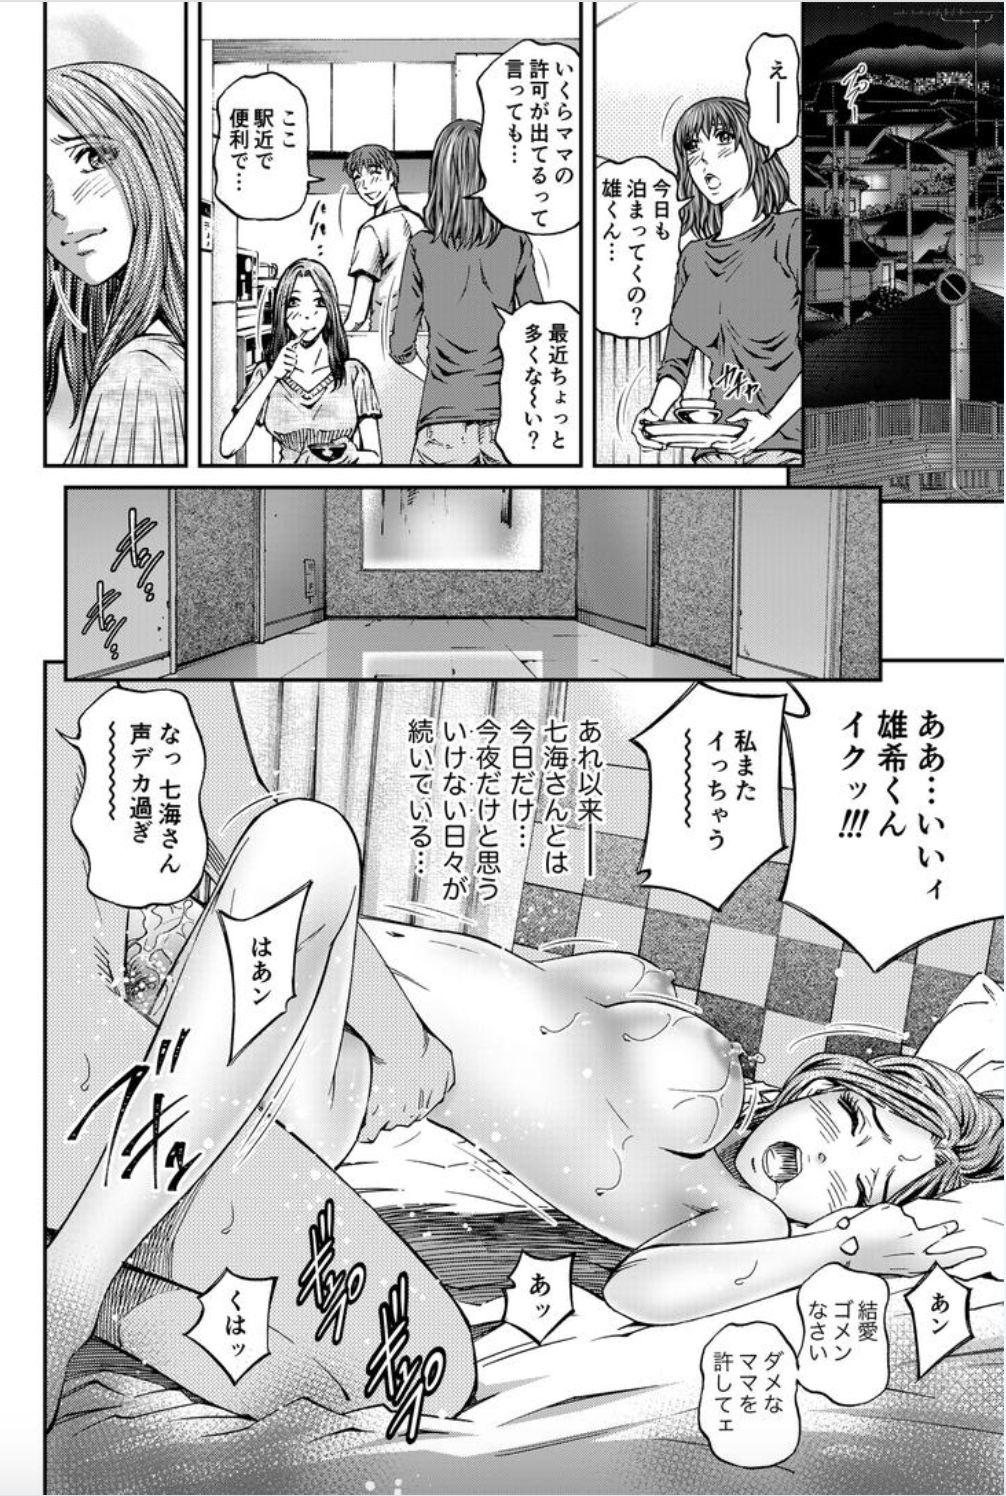 Tongue Onna-tachi ga Iku Toki... Ero Drama Vol. 8 Datte, Kanojo no Haha ga... Foot Fetish - Page 20